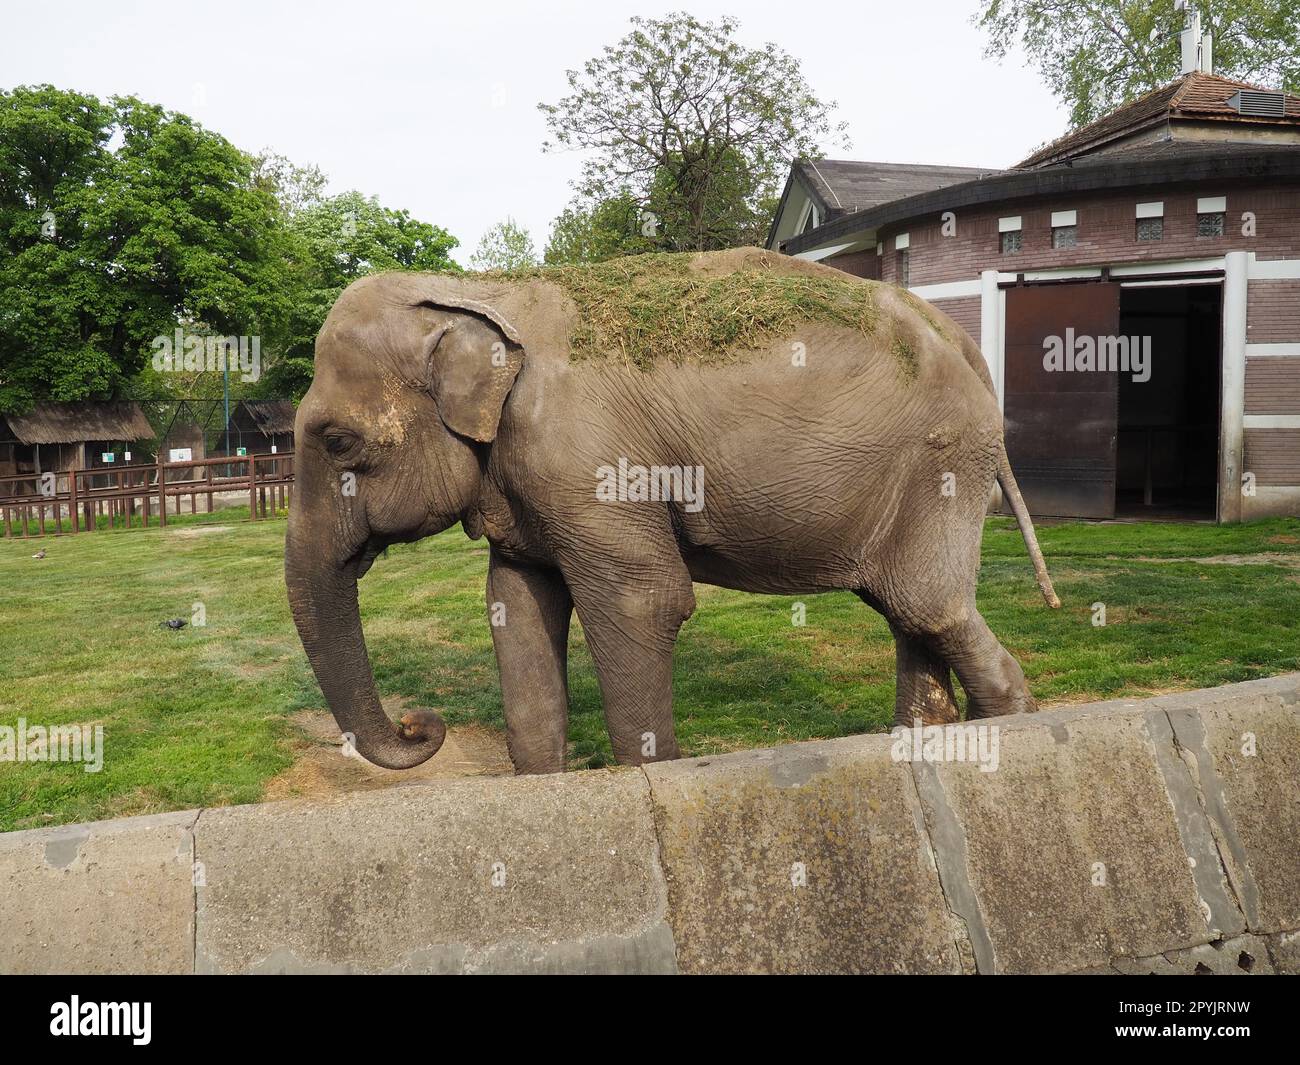 L'elefante asiatico, o elefante indiano, Elephas maximus è un mammifero dell'ordine Proboscis, un genere di elefanti asiatici Elephas e una delle tre specie moderne della famiglia degli elefanti. Passeggiate con gli elefanti Foto Stock